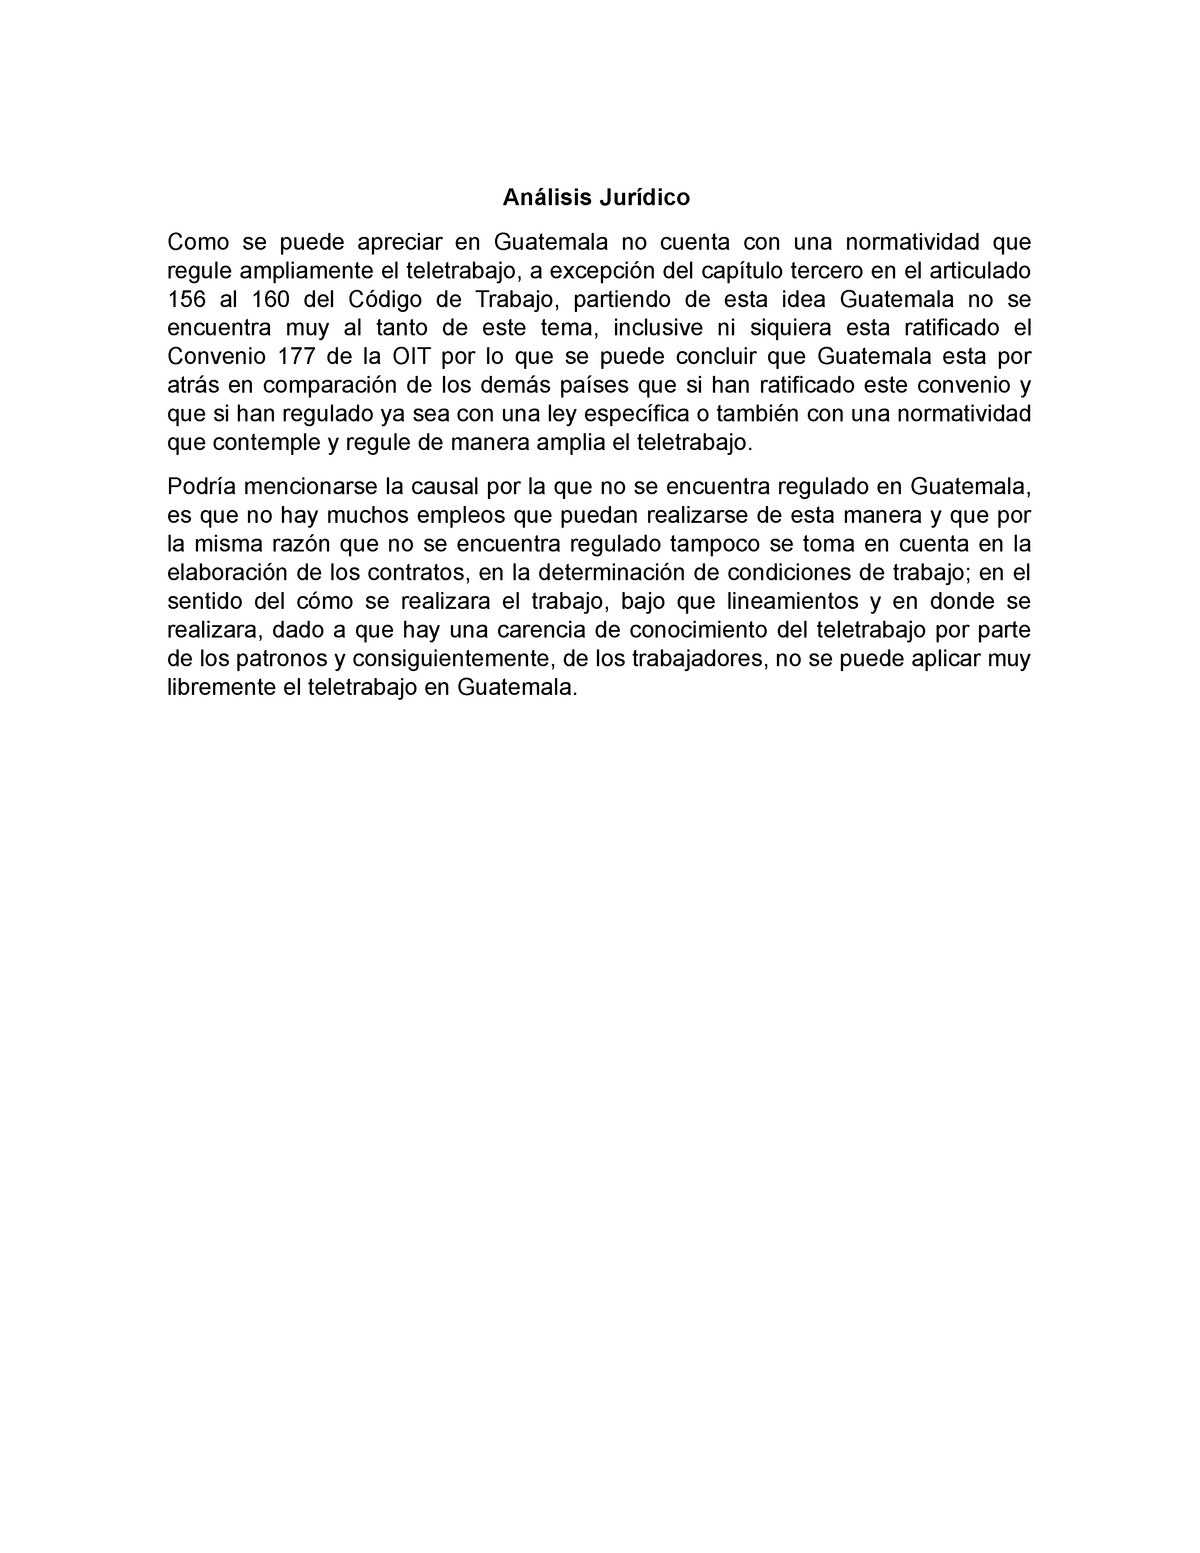 Analisis juridico teletrabajo - Análisis Jurídico Como se puede ...